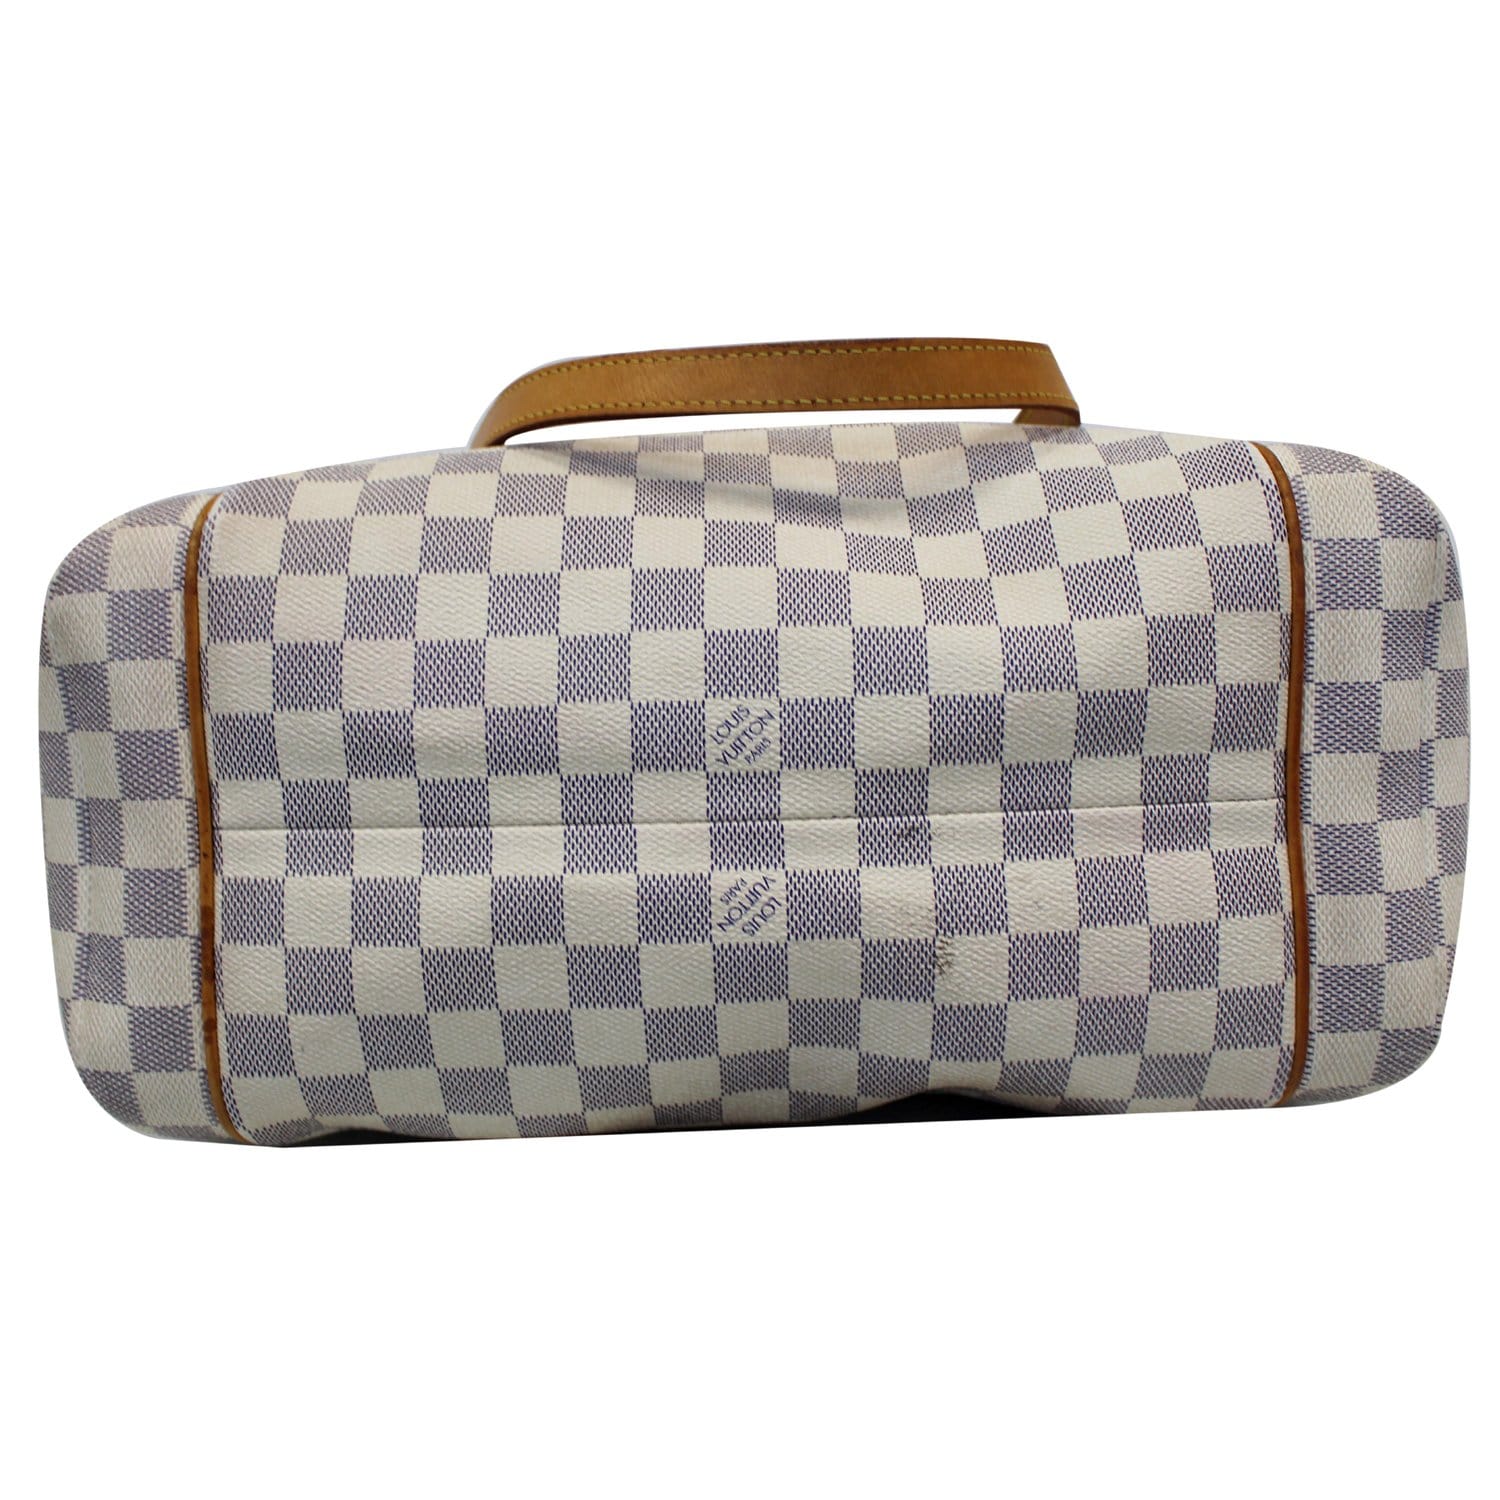 EXCLUSIVE DEAL ‼️😍‼️ #resale Louis Vuitton bag